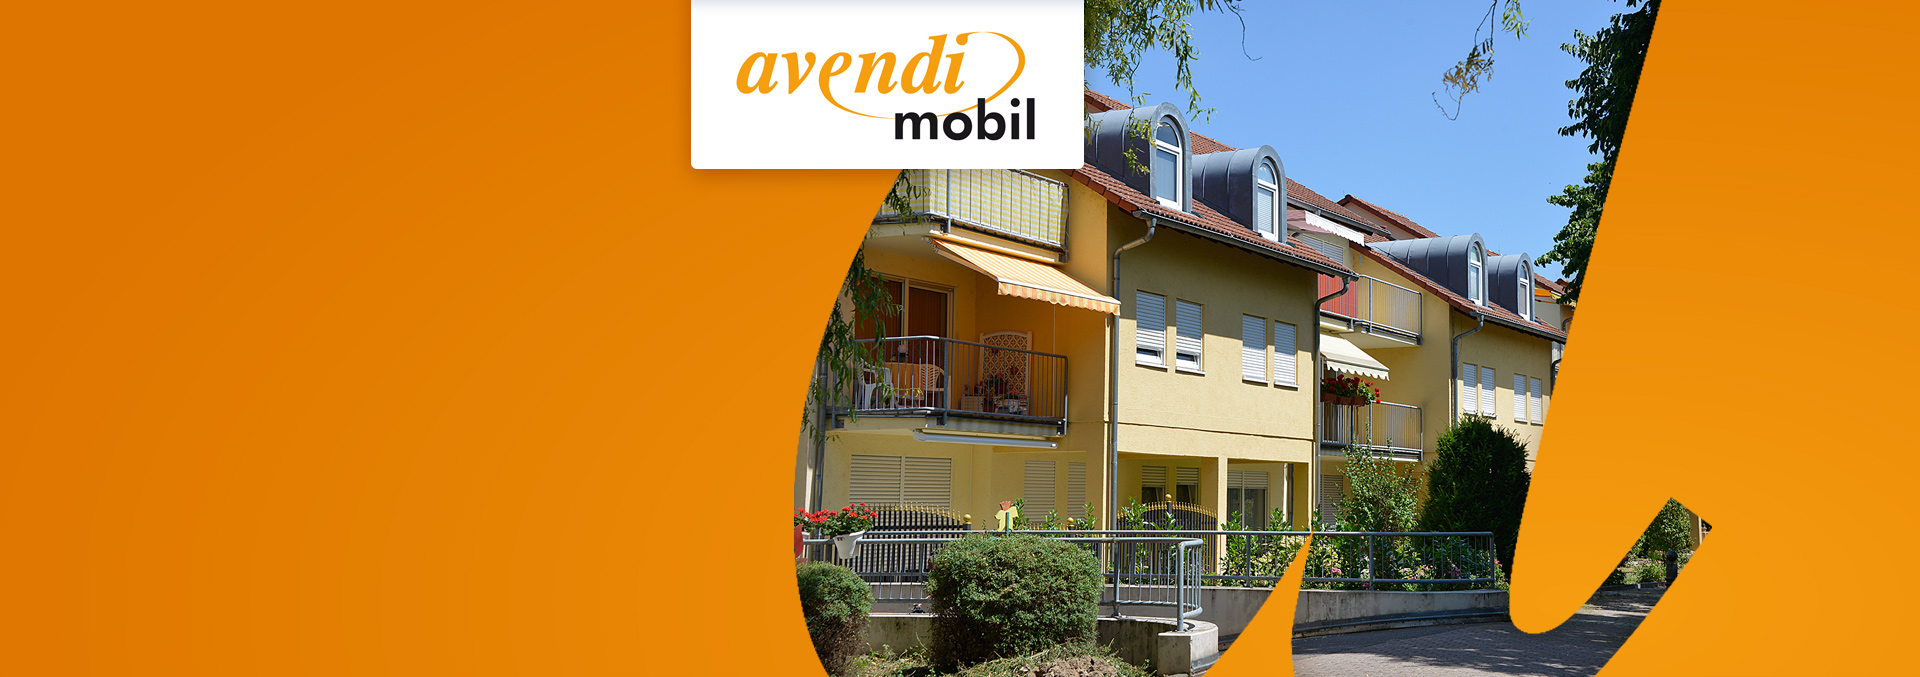 Ambulanter Pflegedienst avendi mobil Kehl: Gelbe dreistöckige Häuser mit Vorgärten in begrünter Straße.